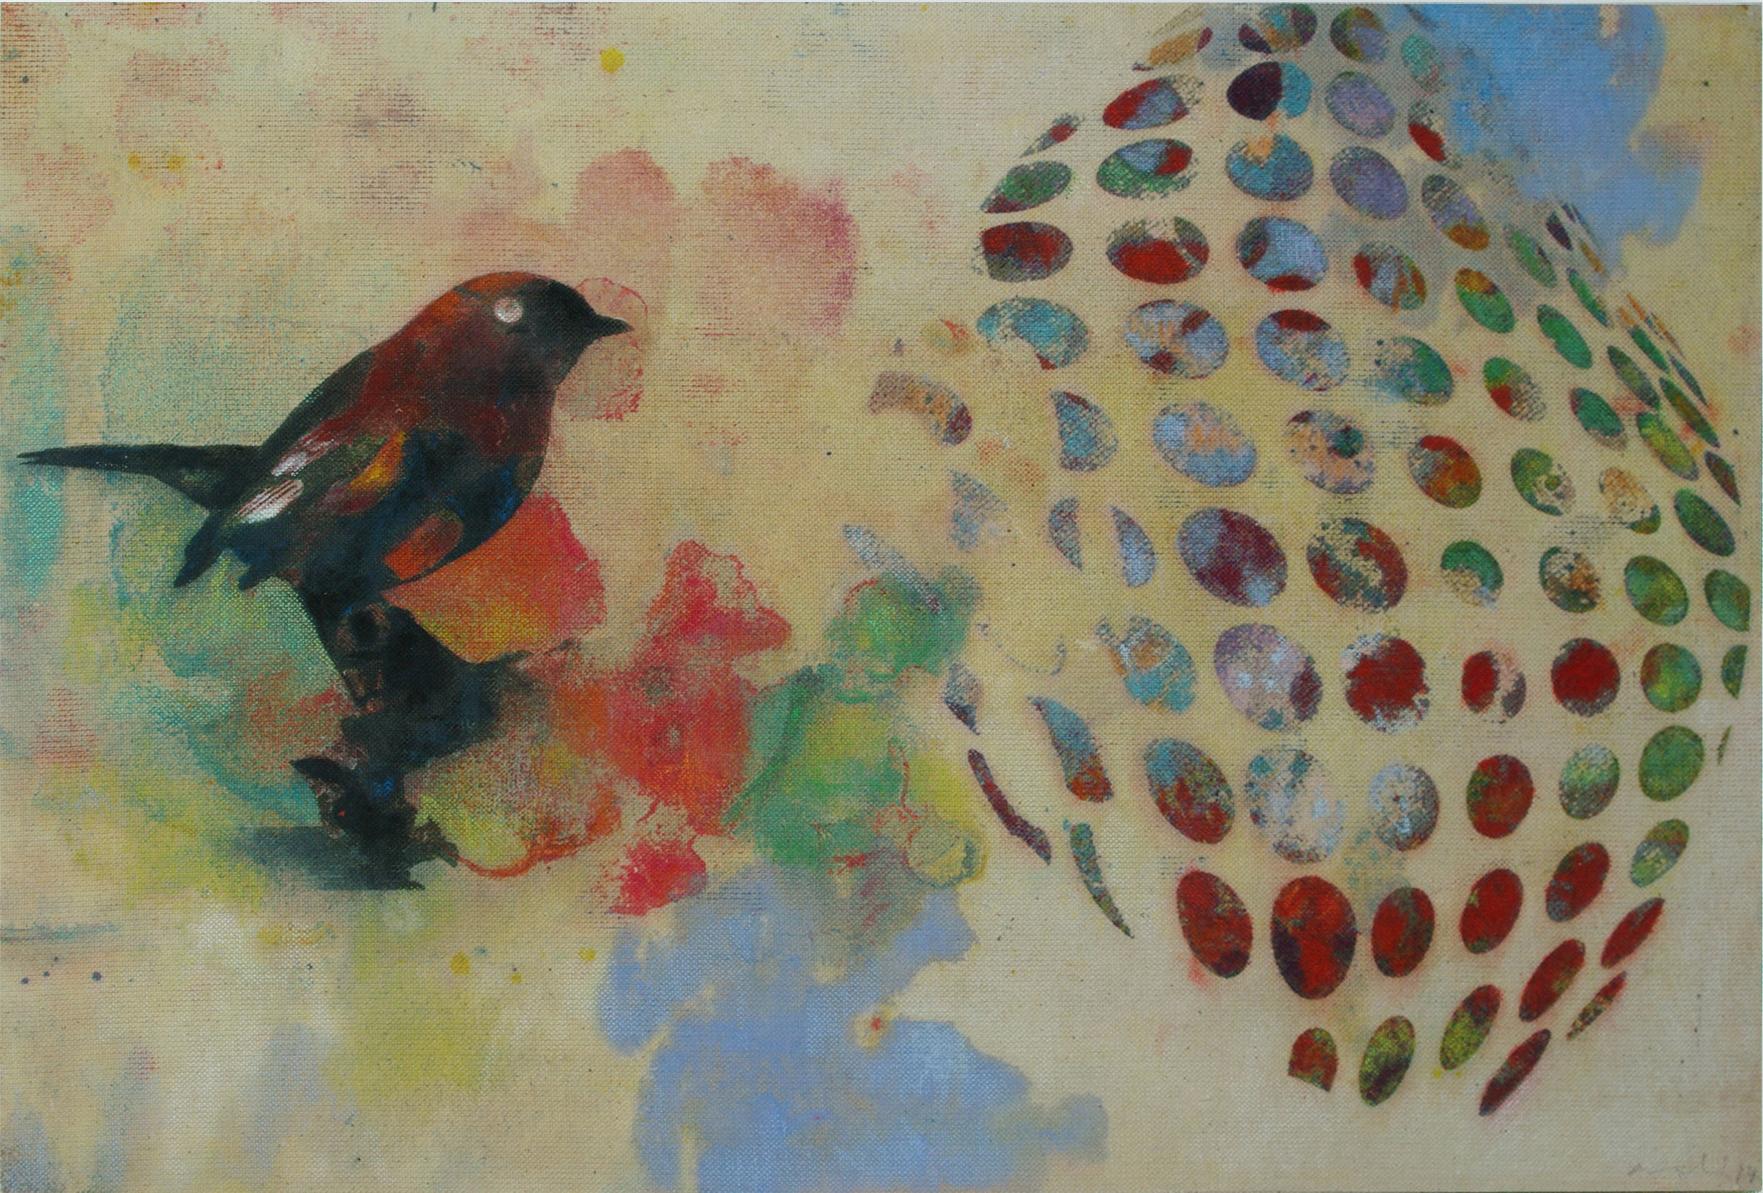 Vögel 023 – Zeitgenössisch, abstrakt, expressionistisch, modern, Straßenkunst, Surrealistisch